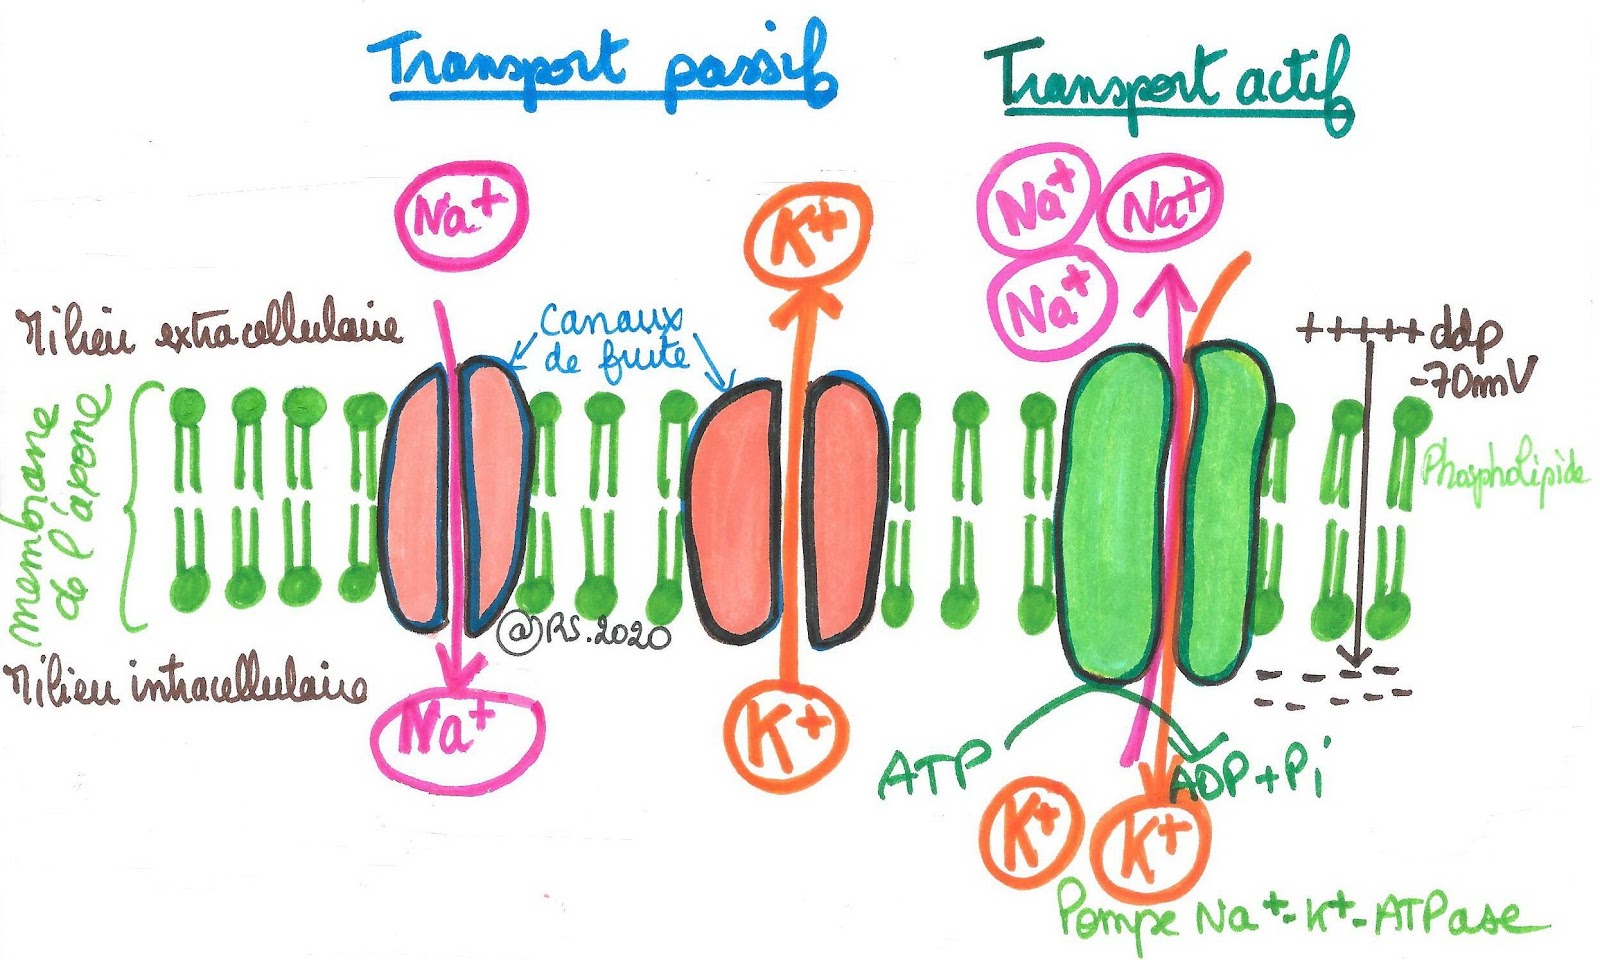 <b>Pompe Na-K ATP ase et différence de potentiel transmembranaire</b>